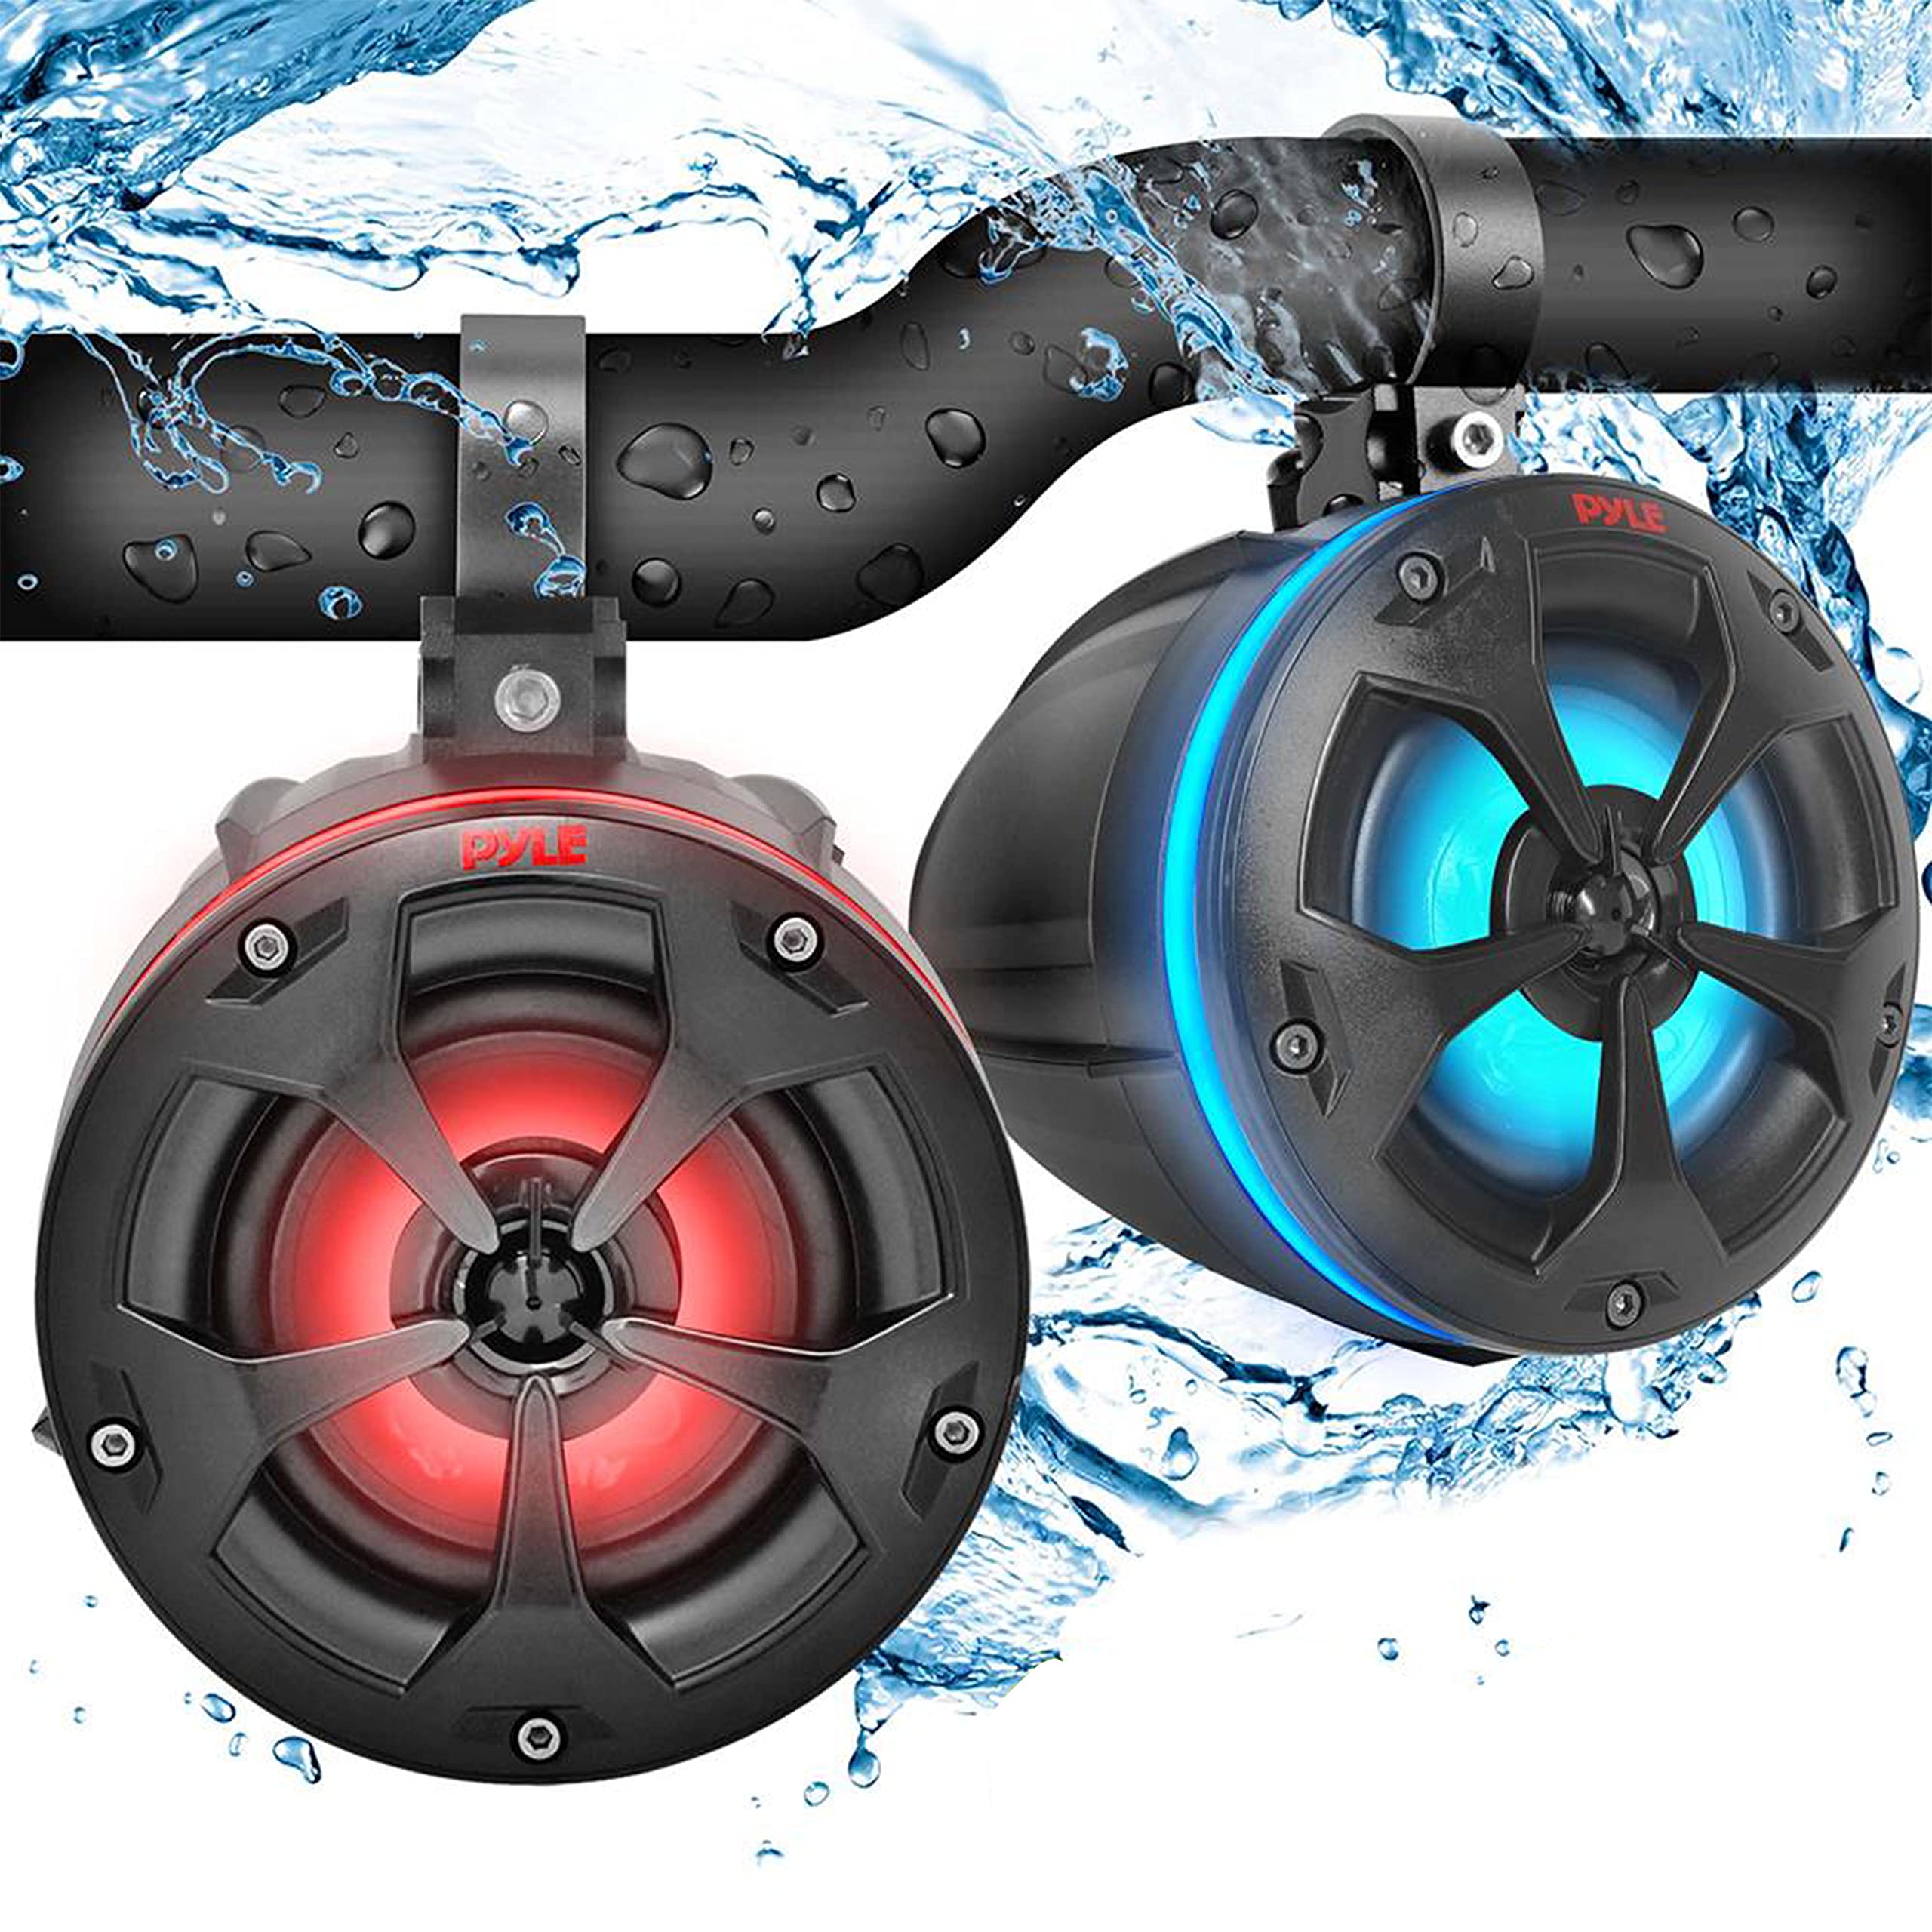 Pyle 2-Way Waterproof Off Road Bluetooth Speakers -4